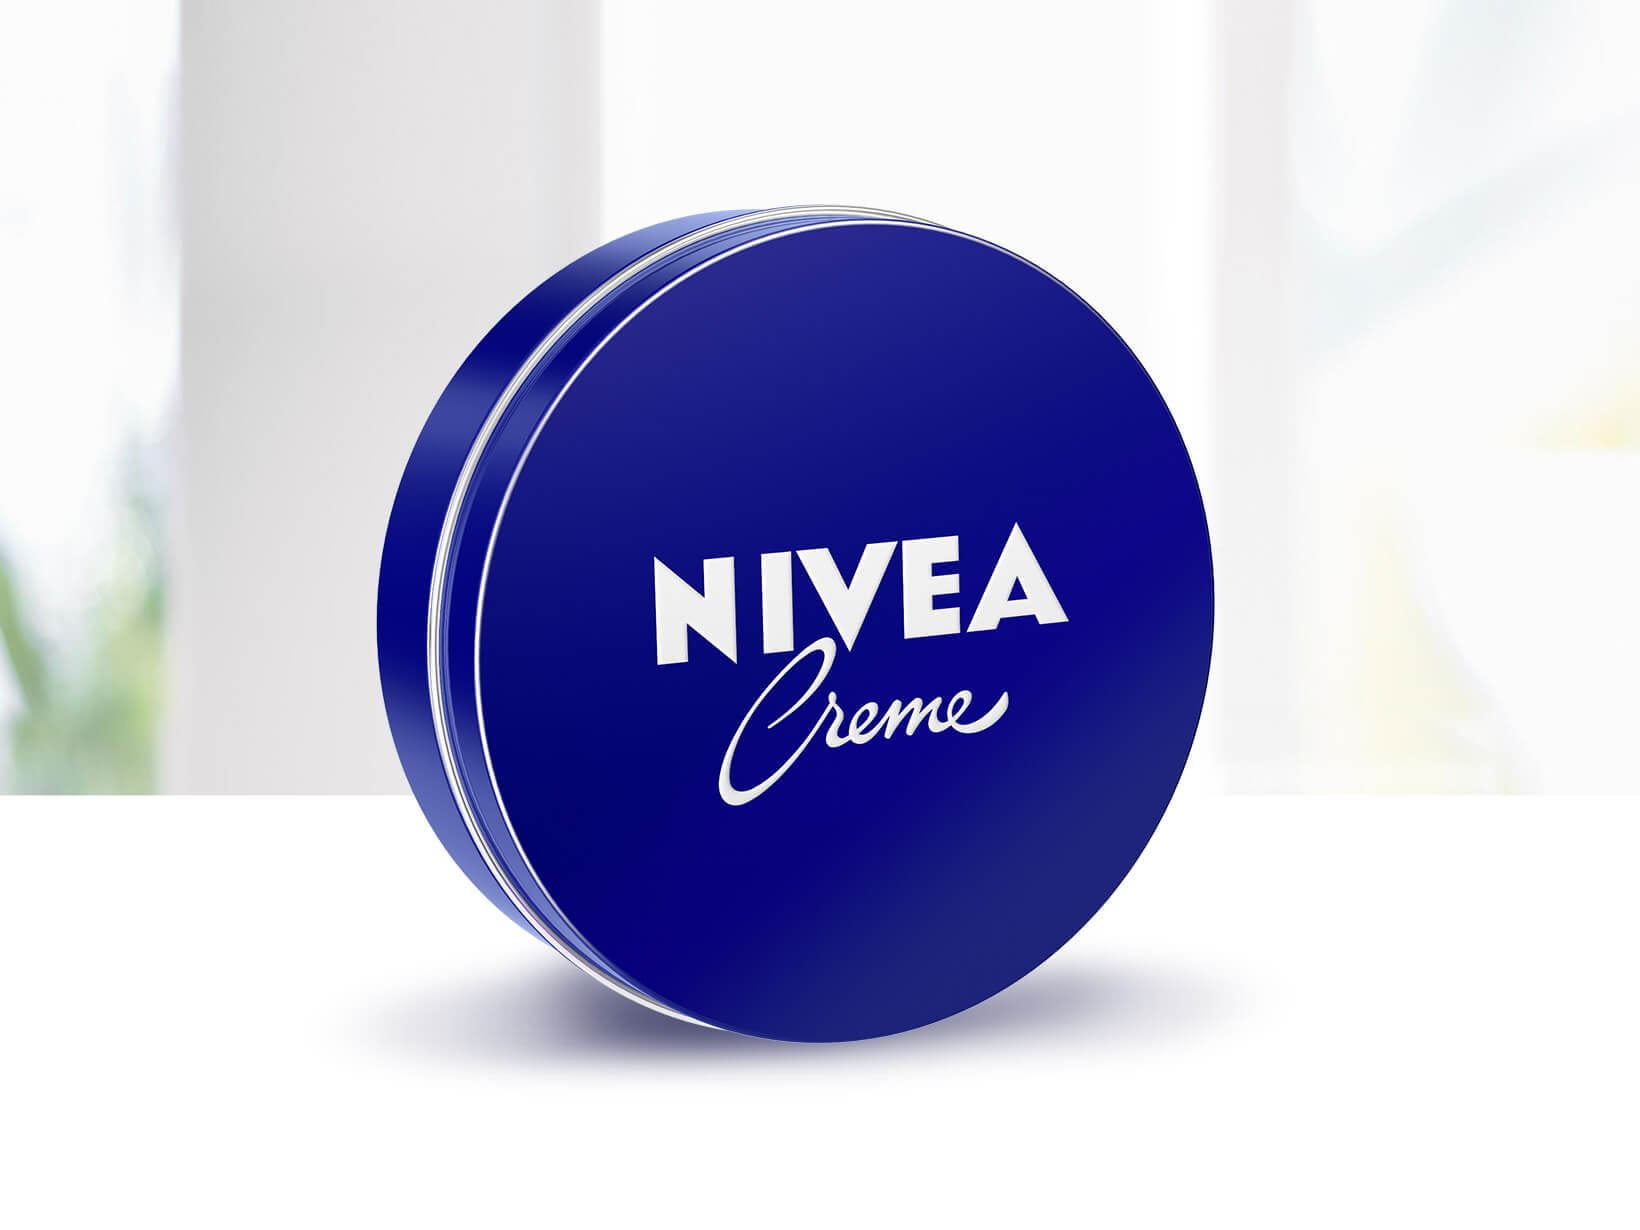 Der Creme-Klassiker NIVEA Creme